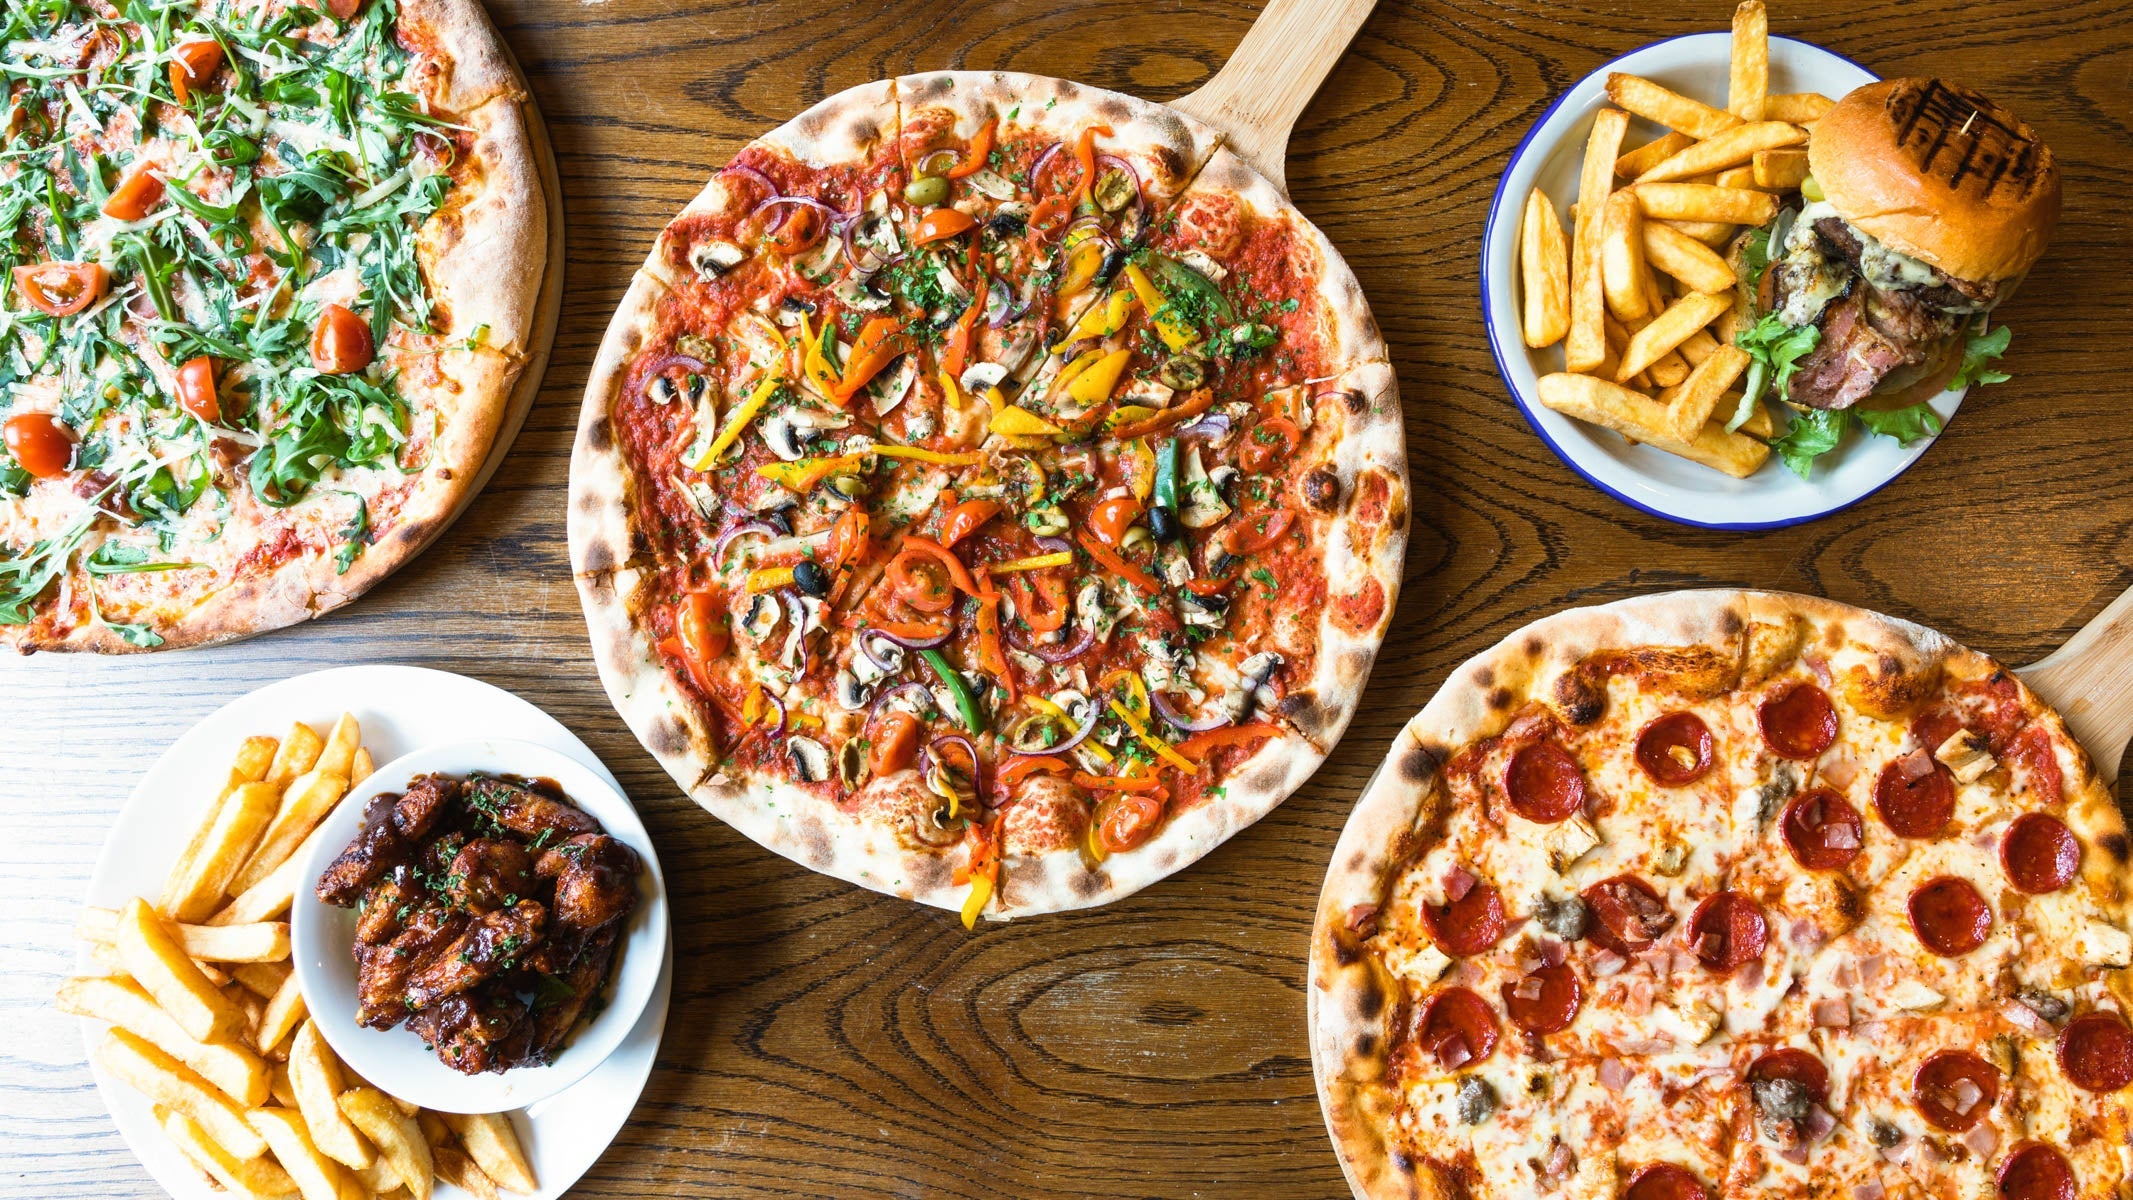 Pizza Lounge takeaway menu in London | TASTY FIND